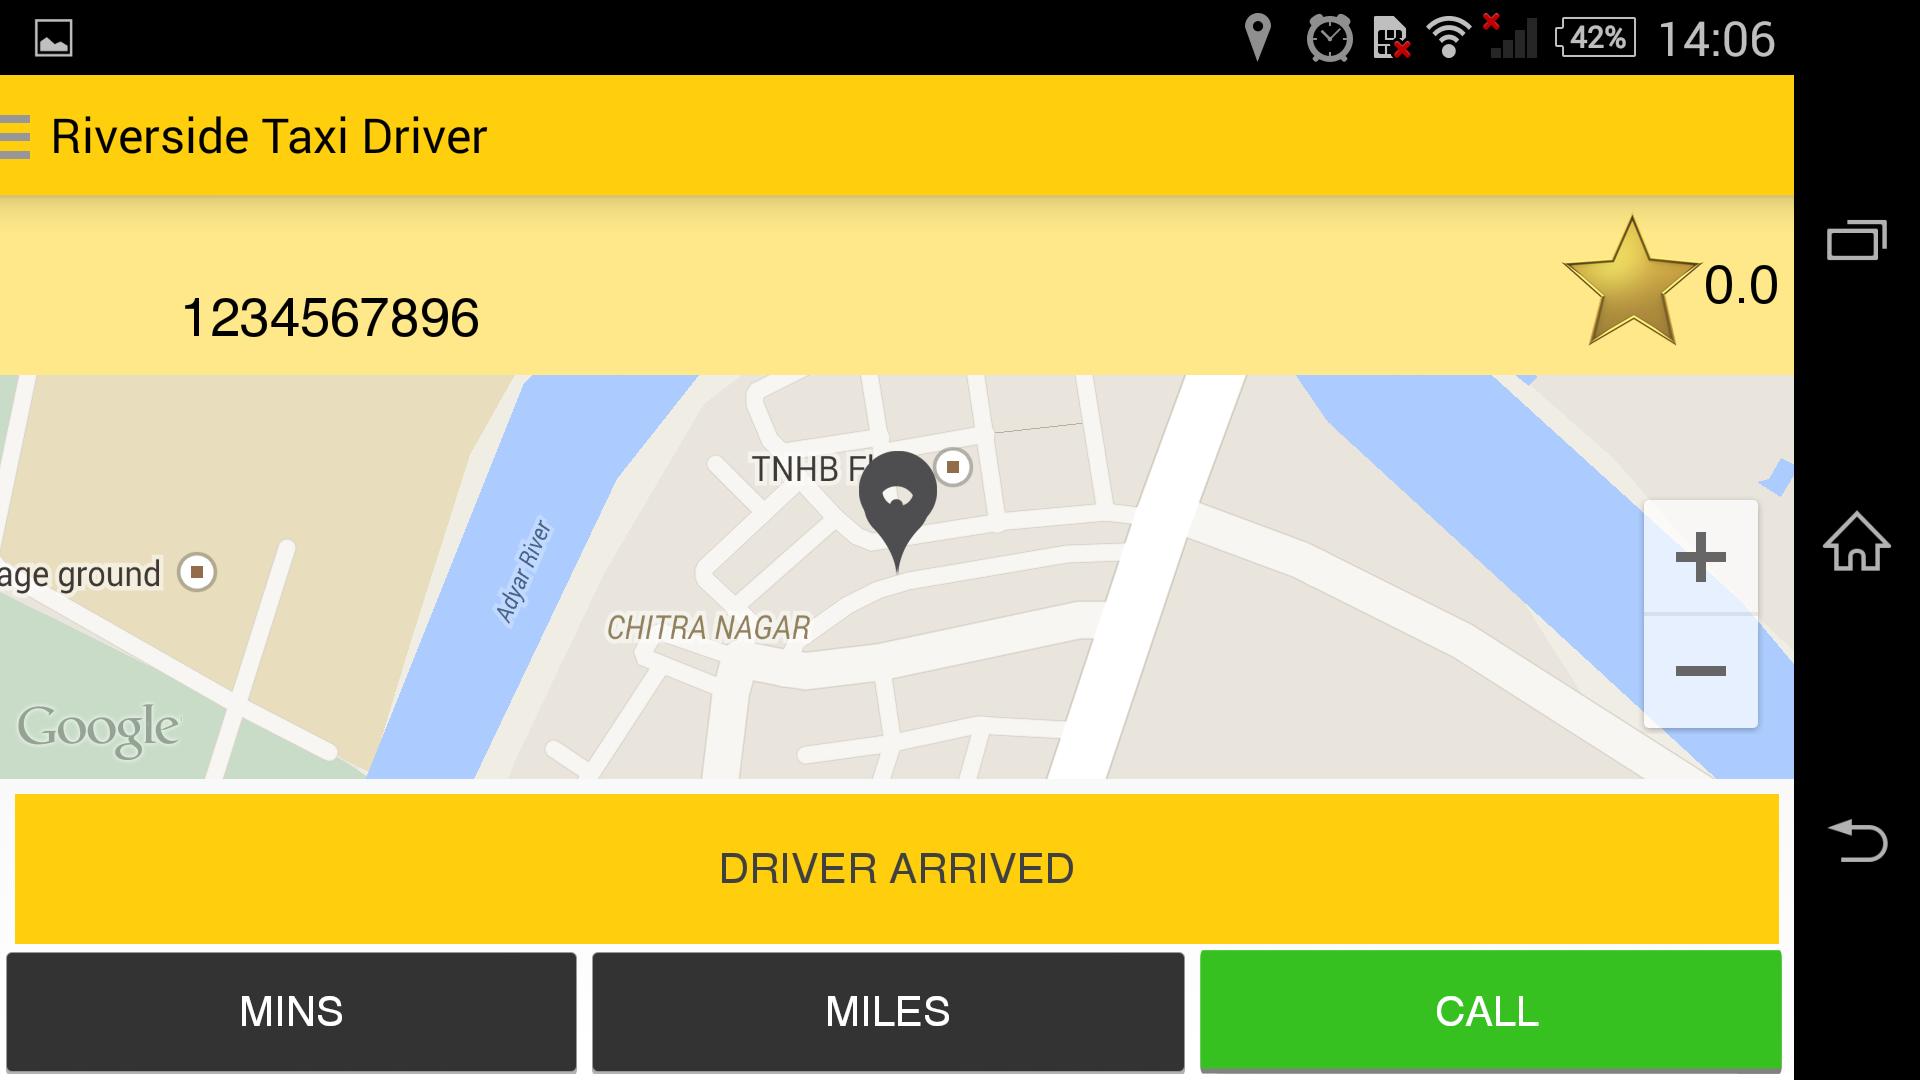 Такси драйвер авторизация. Такси драйвер rfhnf. Как в приложении такси драйвер менять парки. Такси драйвер в каком городе находится. Не показывает карту города такси драйвер.